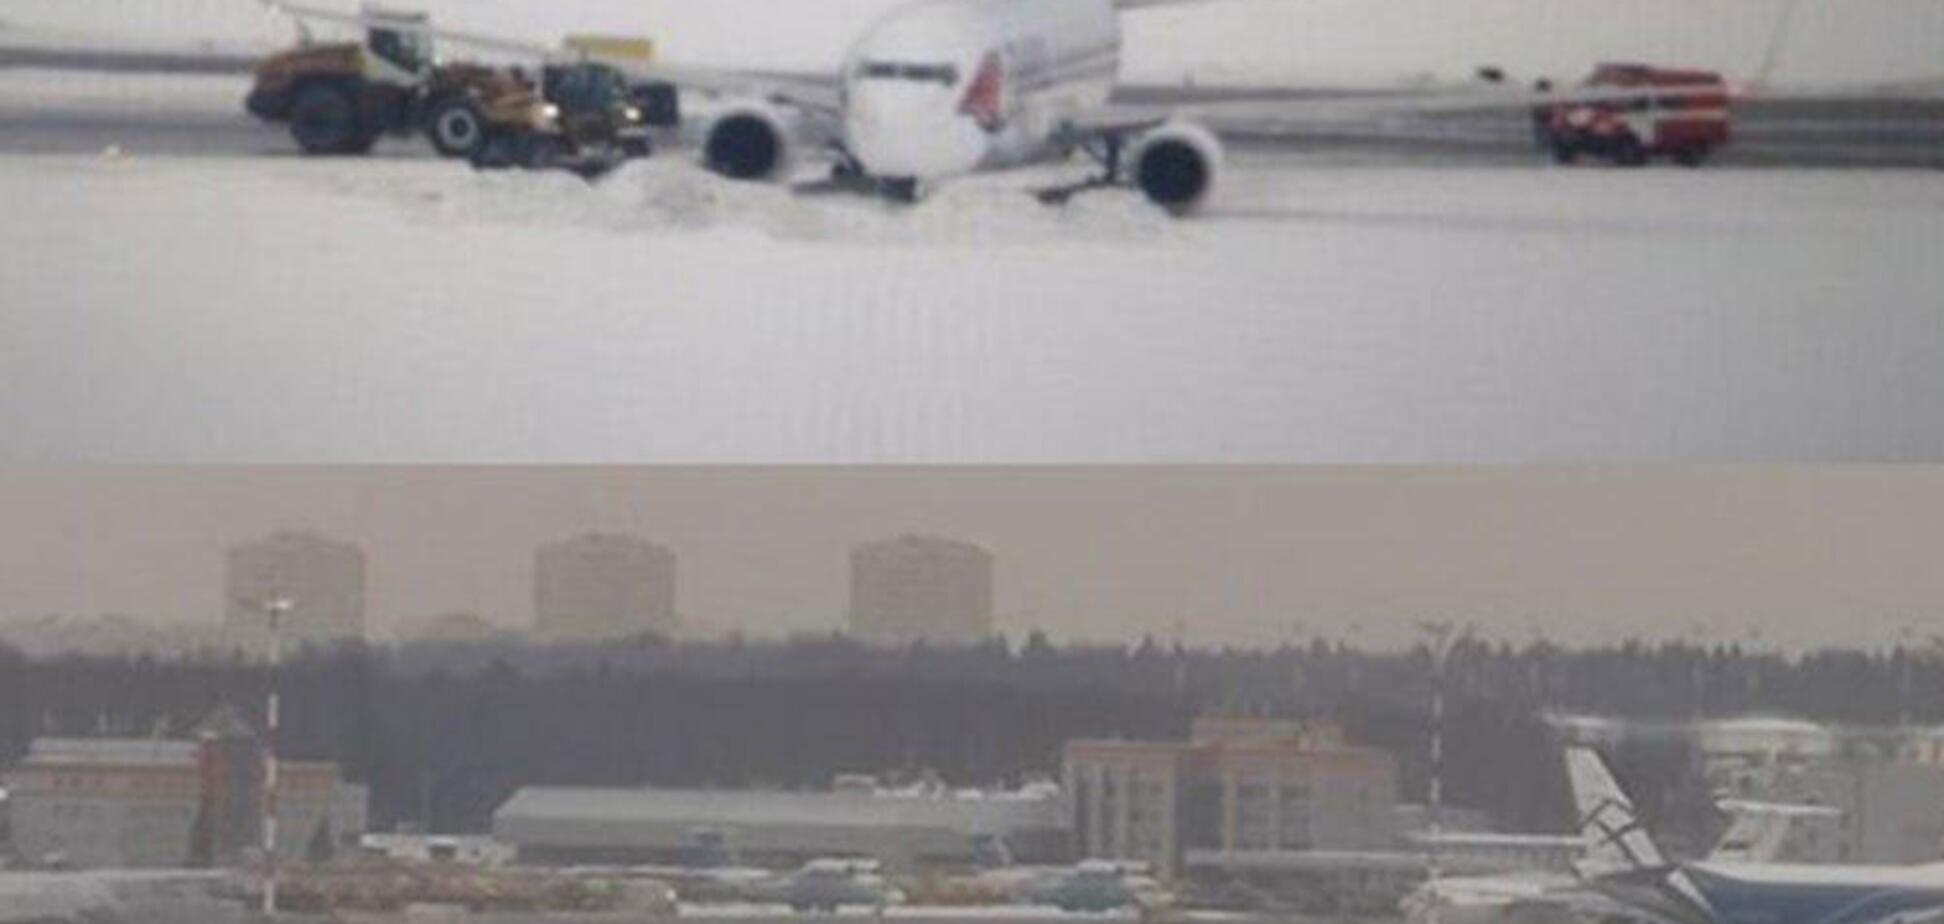   Экипаж не удержал: в России произошло серьезное ЧП с пассажирским самолетом